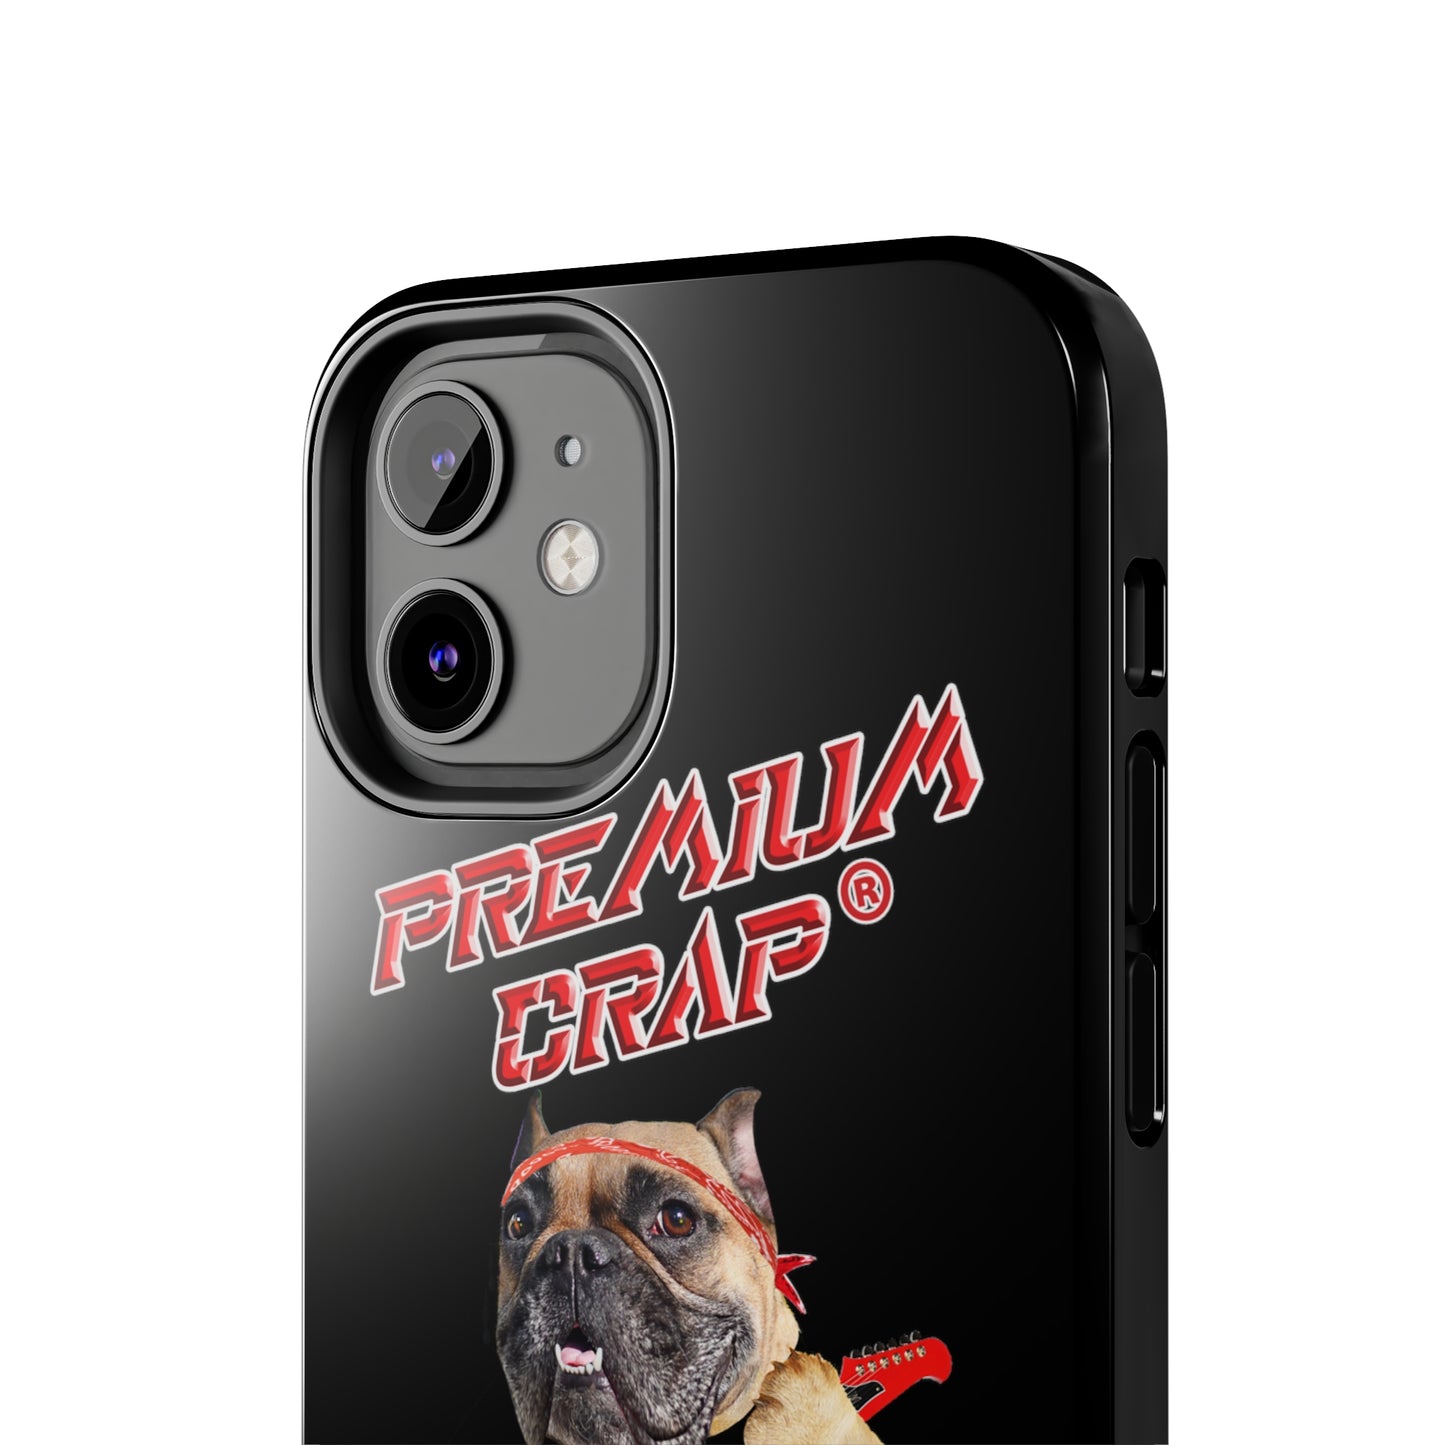 Premium Crap II Tough Phone Cases